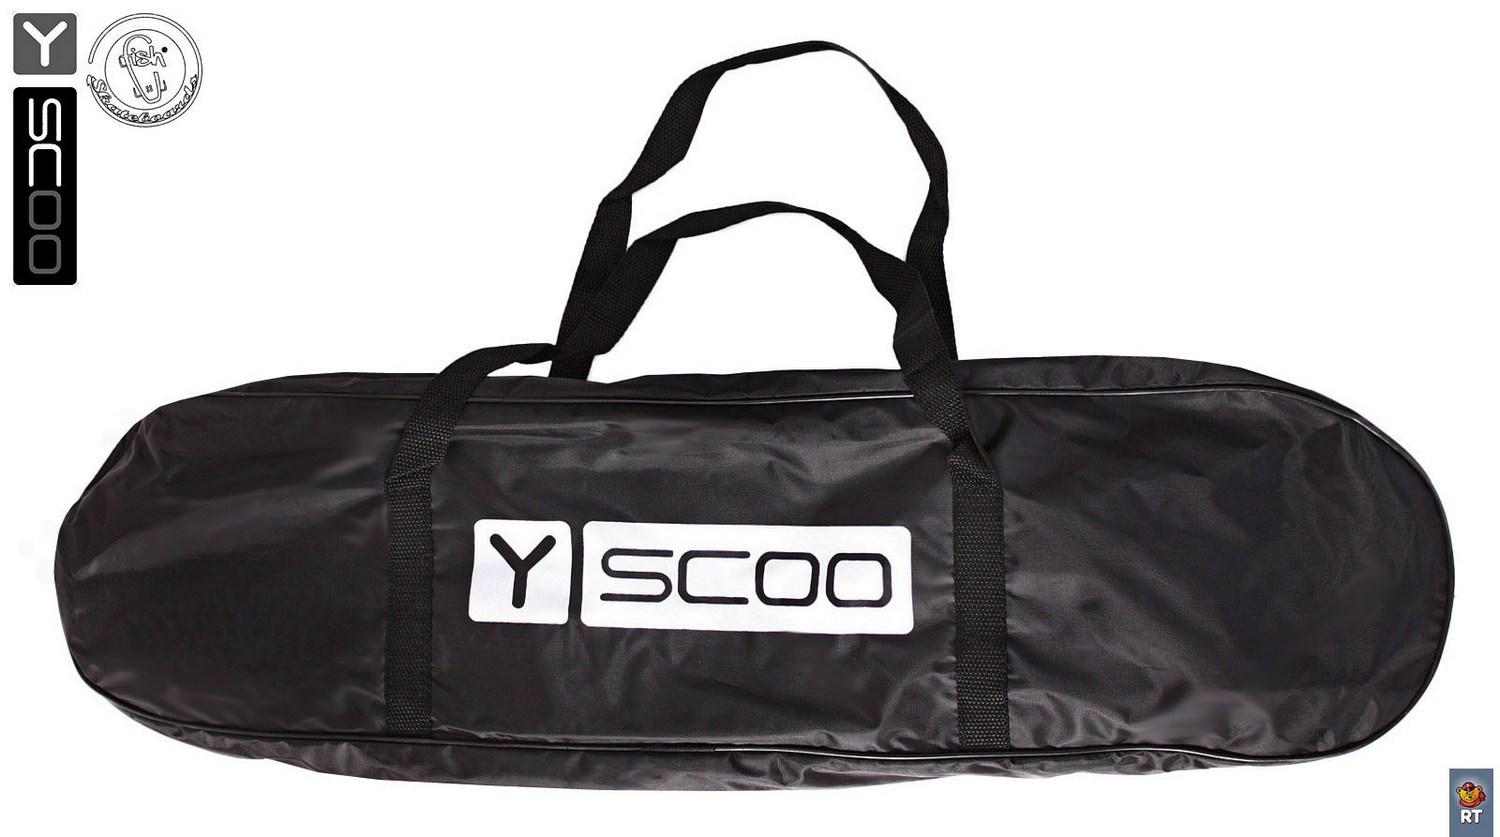 Скейтборд виниловый Y-Scoo Skateboard Fishbone 405-G с ручкой и сумкой, зеленый  